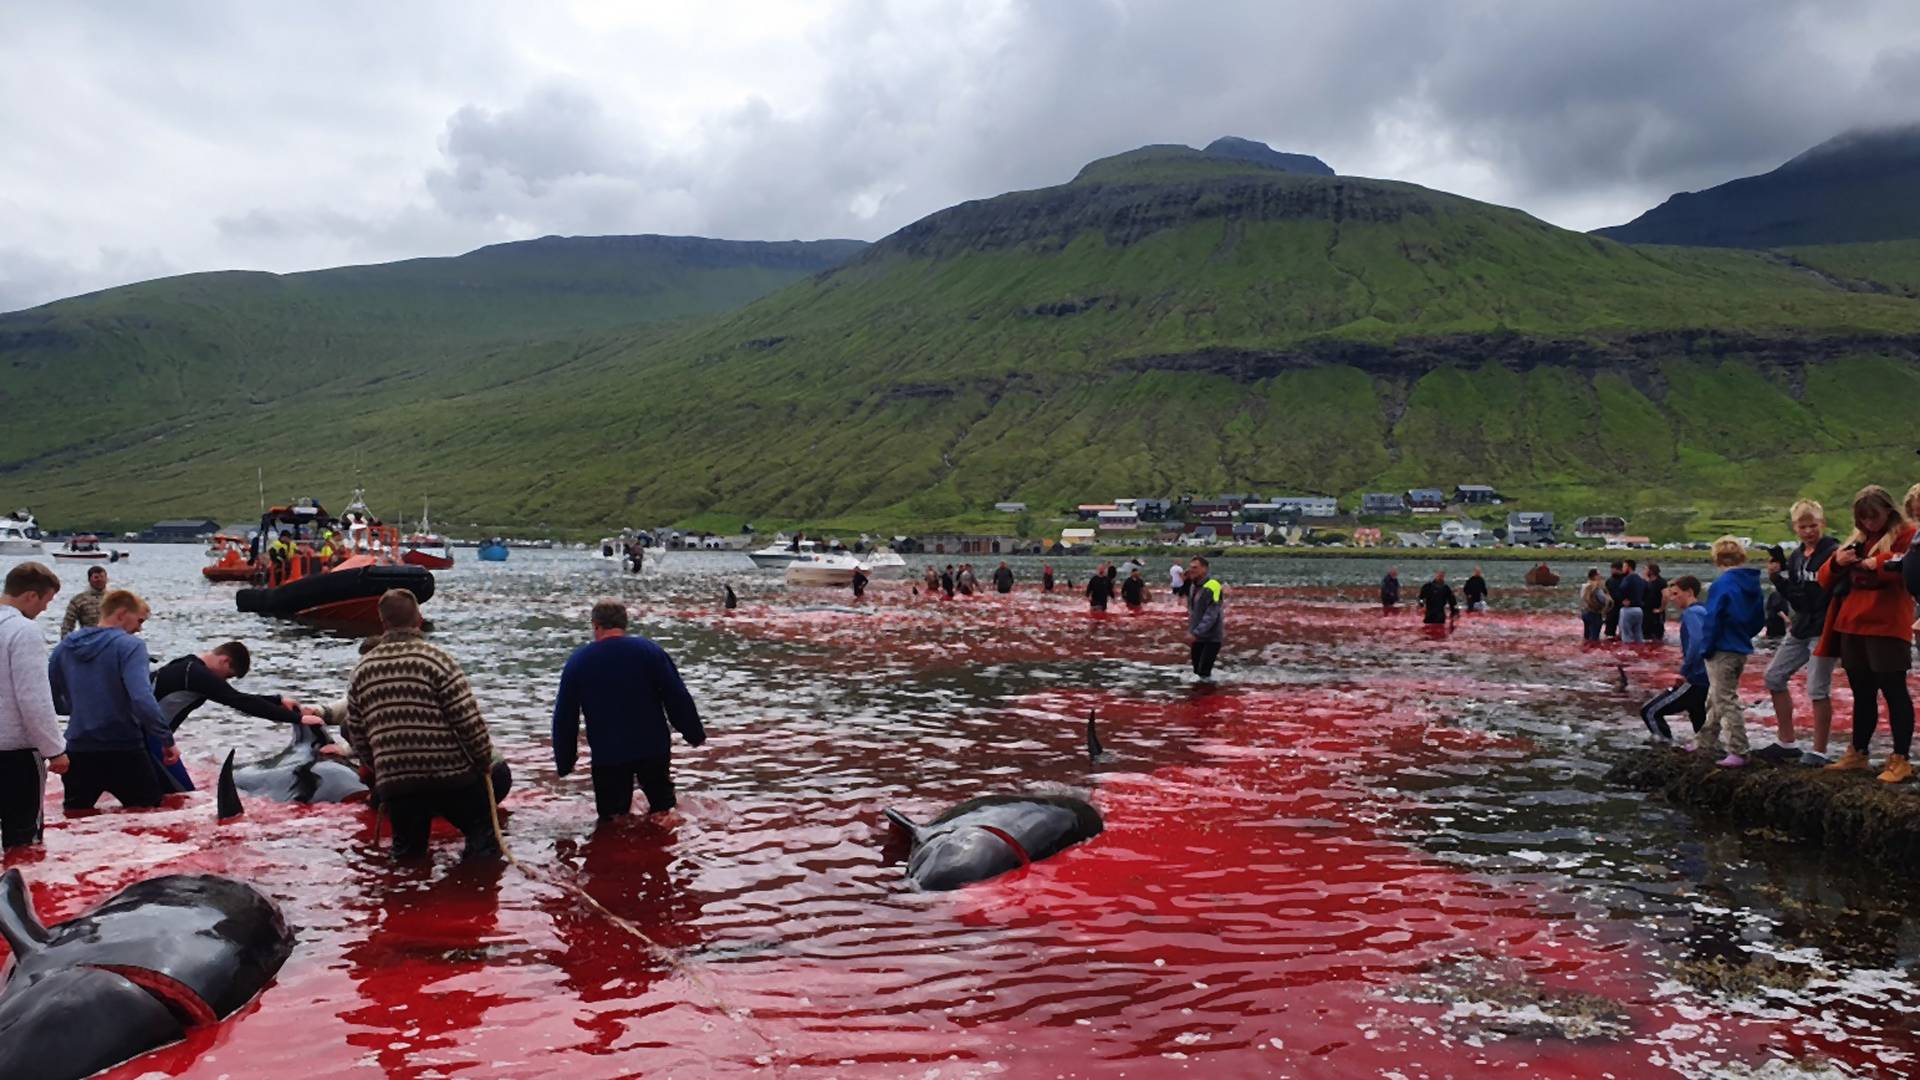 Undorító hagyomány: 23 bálnát mészároltak le a turisták szeme láttára